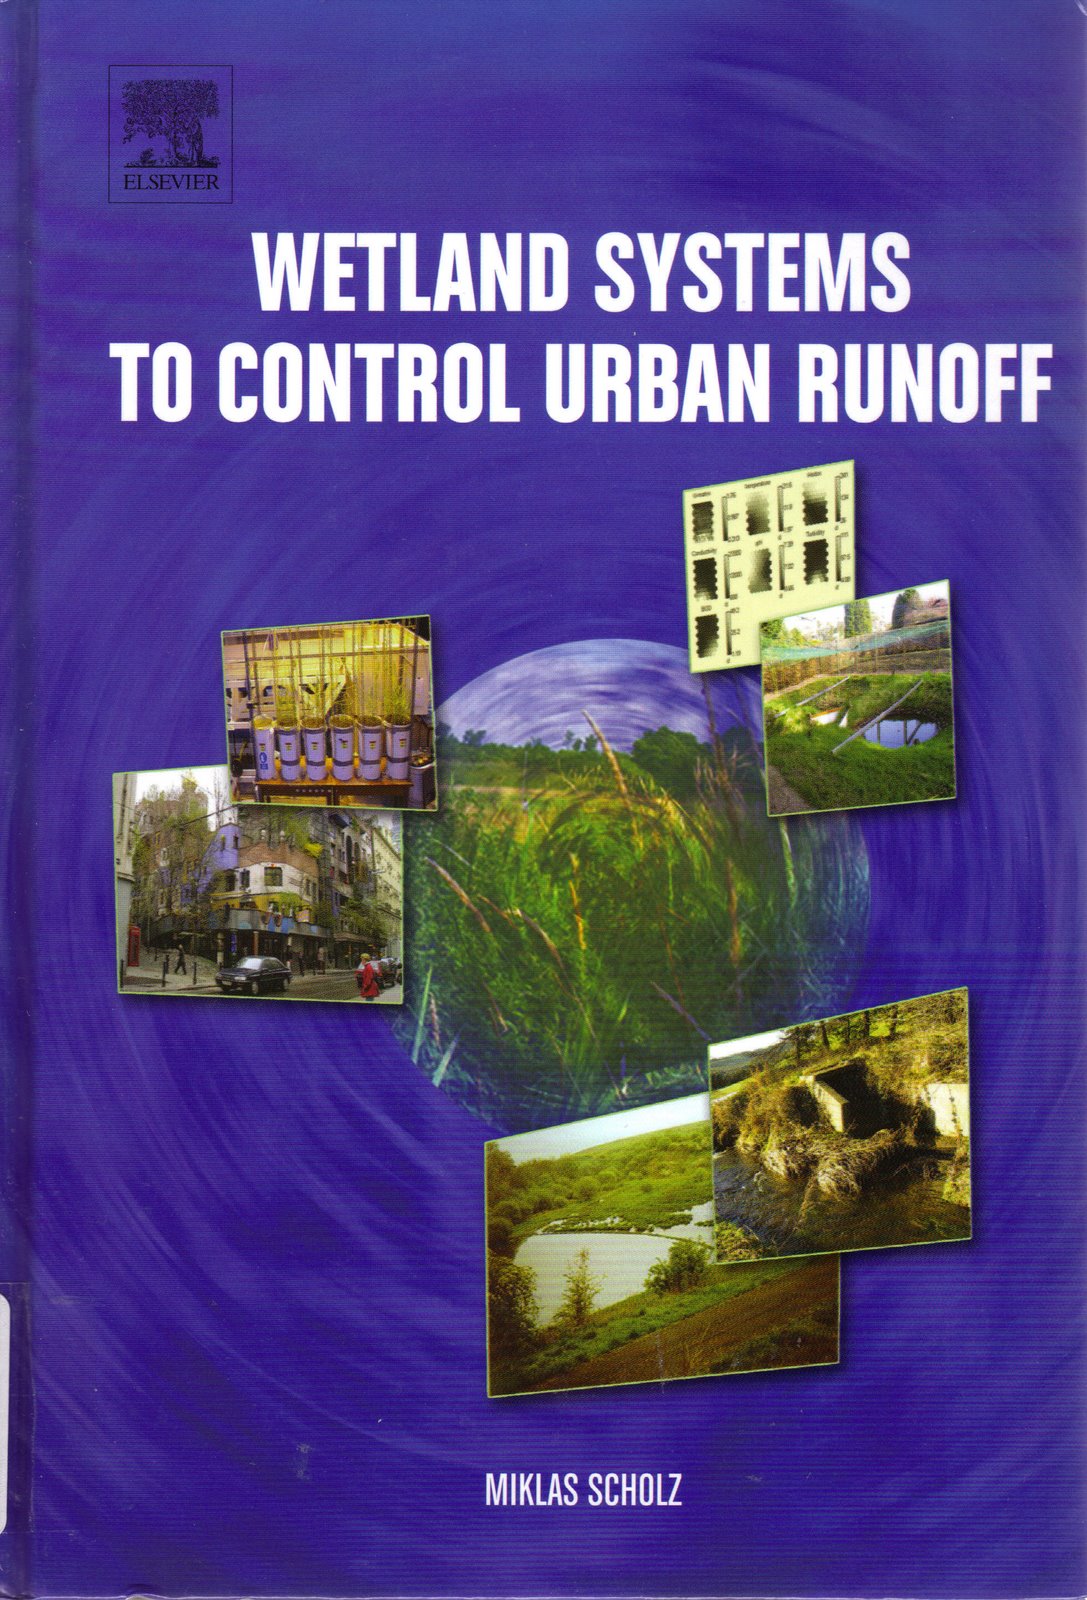 [wetland+systems+to+control+urban+runoff.jpg]